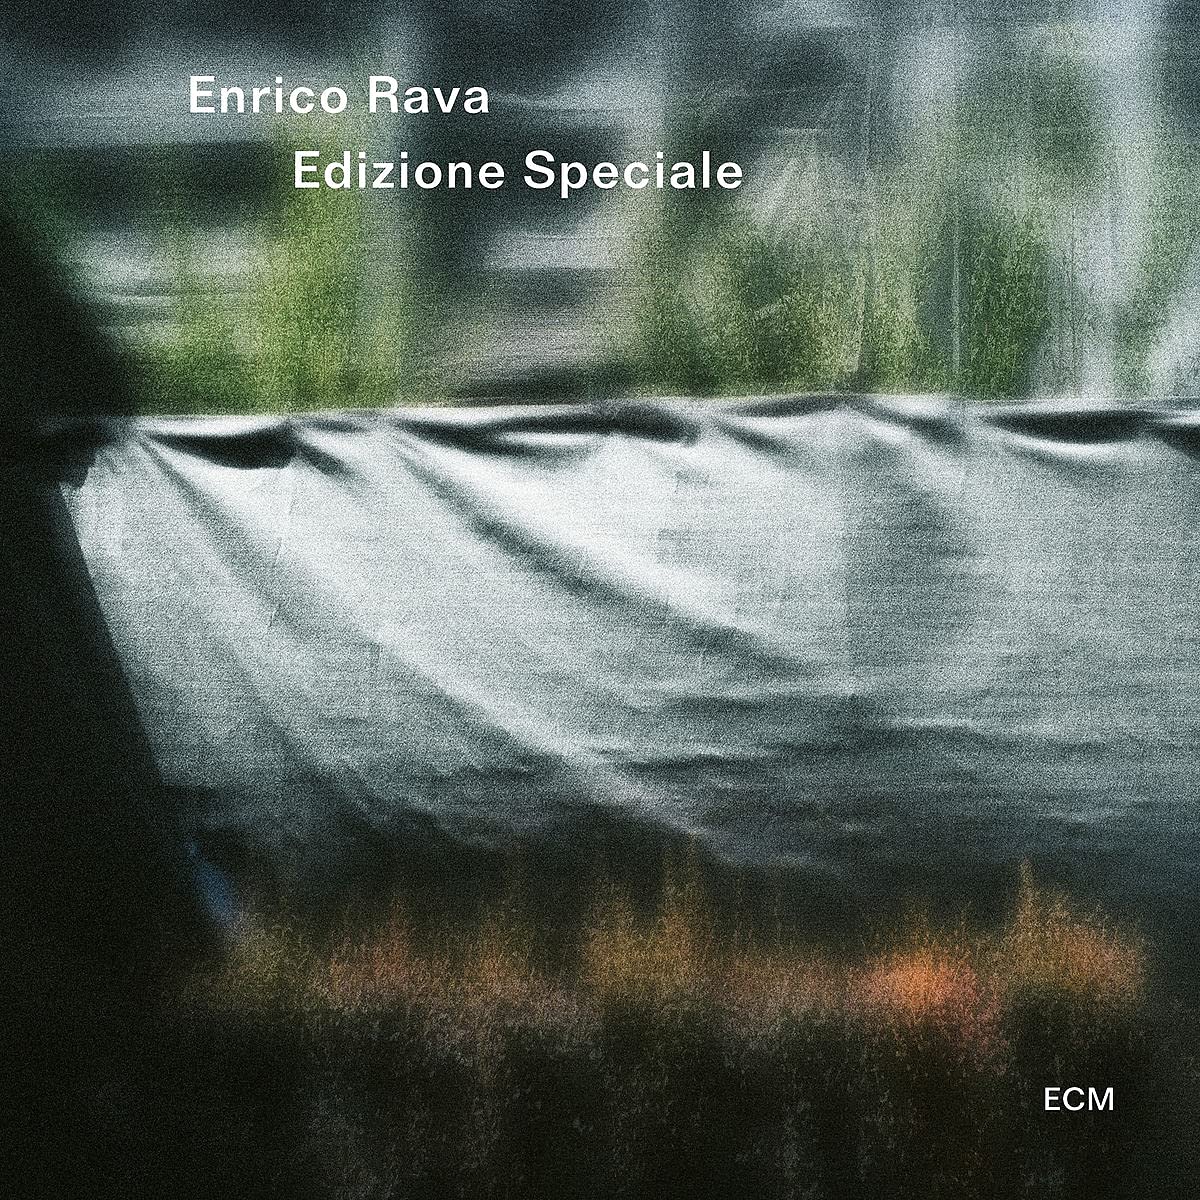 ENRICO RAVA - Edizione Speciale cover 